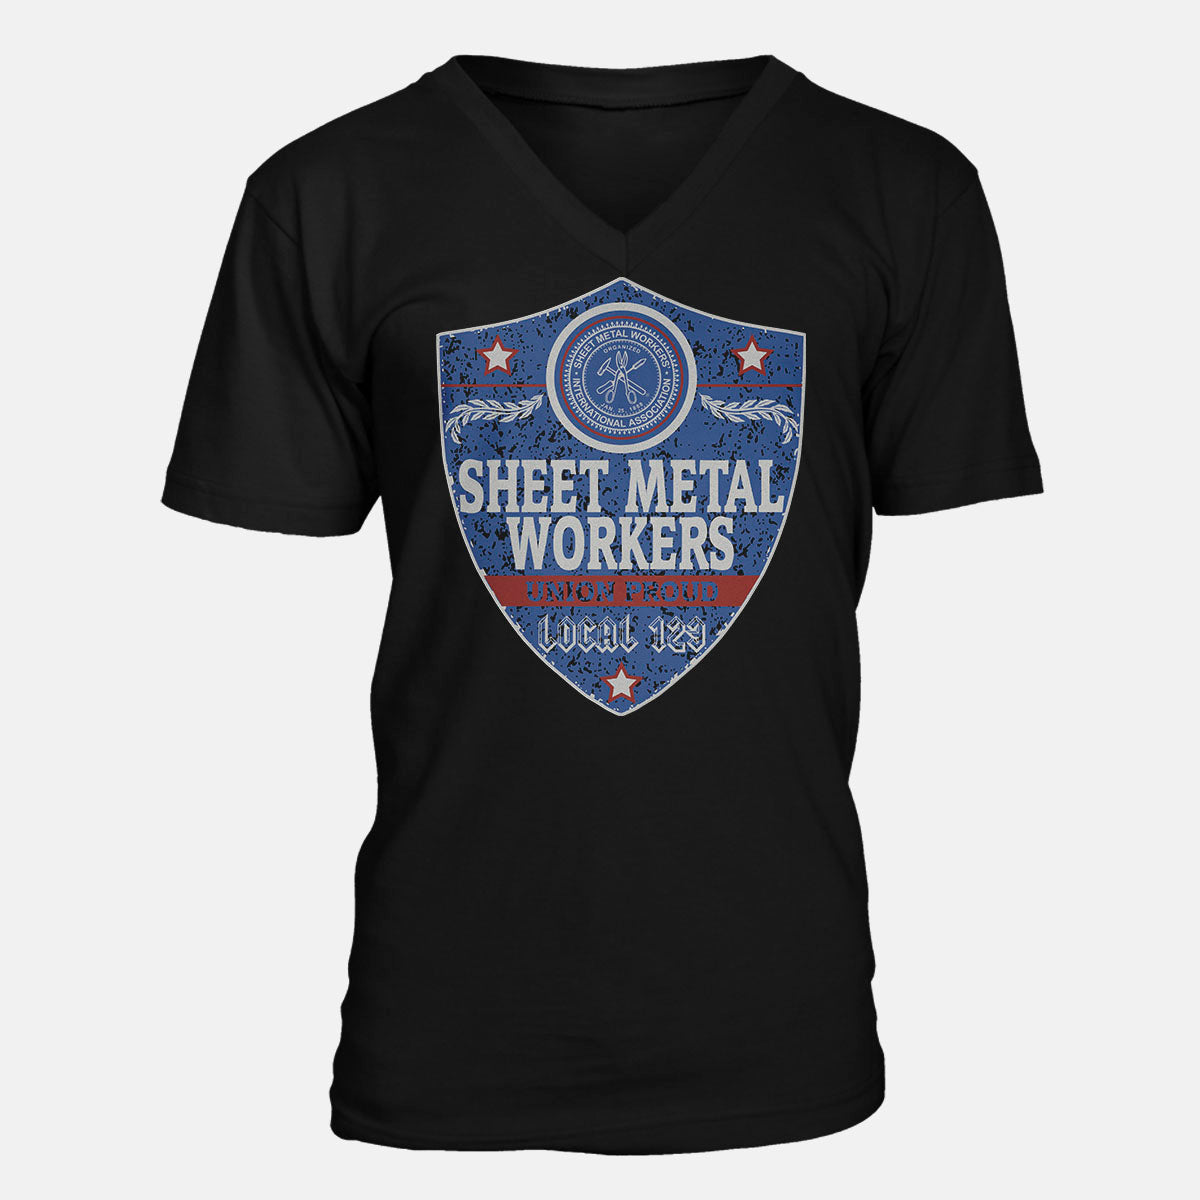 Sheet Metal Workers Blue Badge Apparel